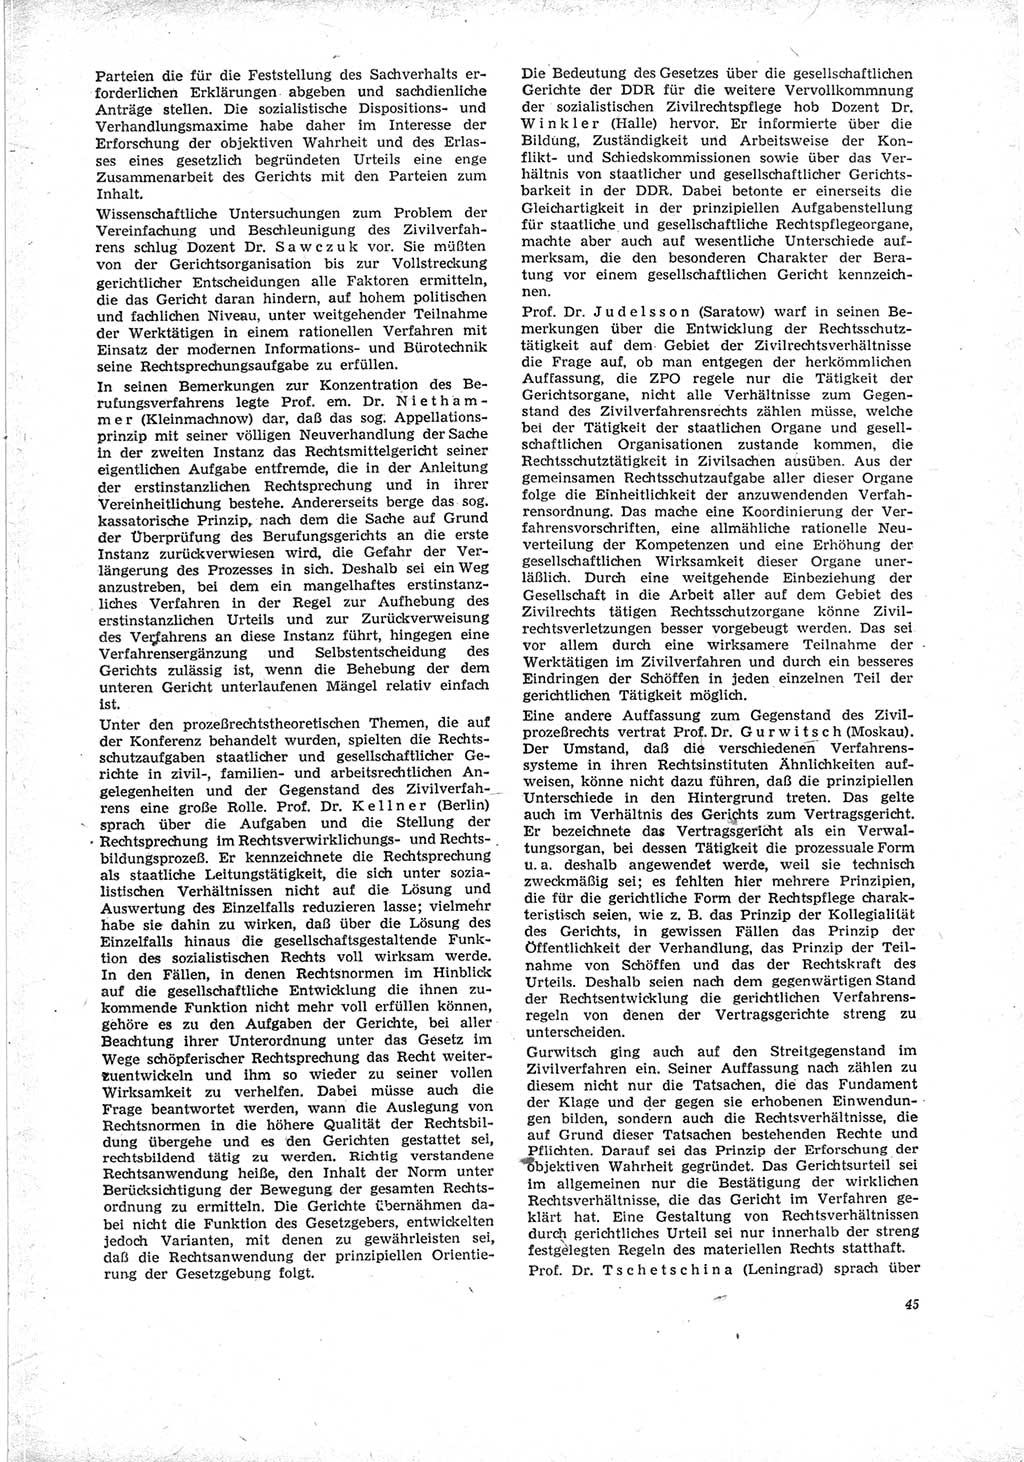 Neue Justiz (NJ), Zeitschrift für Recht und Rechtswissenschaft [Deutsche Demokratische Republik (DDR)], 23. Jahrgang 1969, Seite 45 (NJ DDR 1969, S. 45)